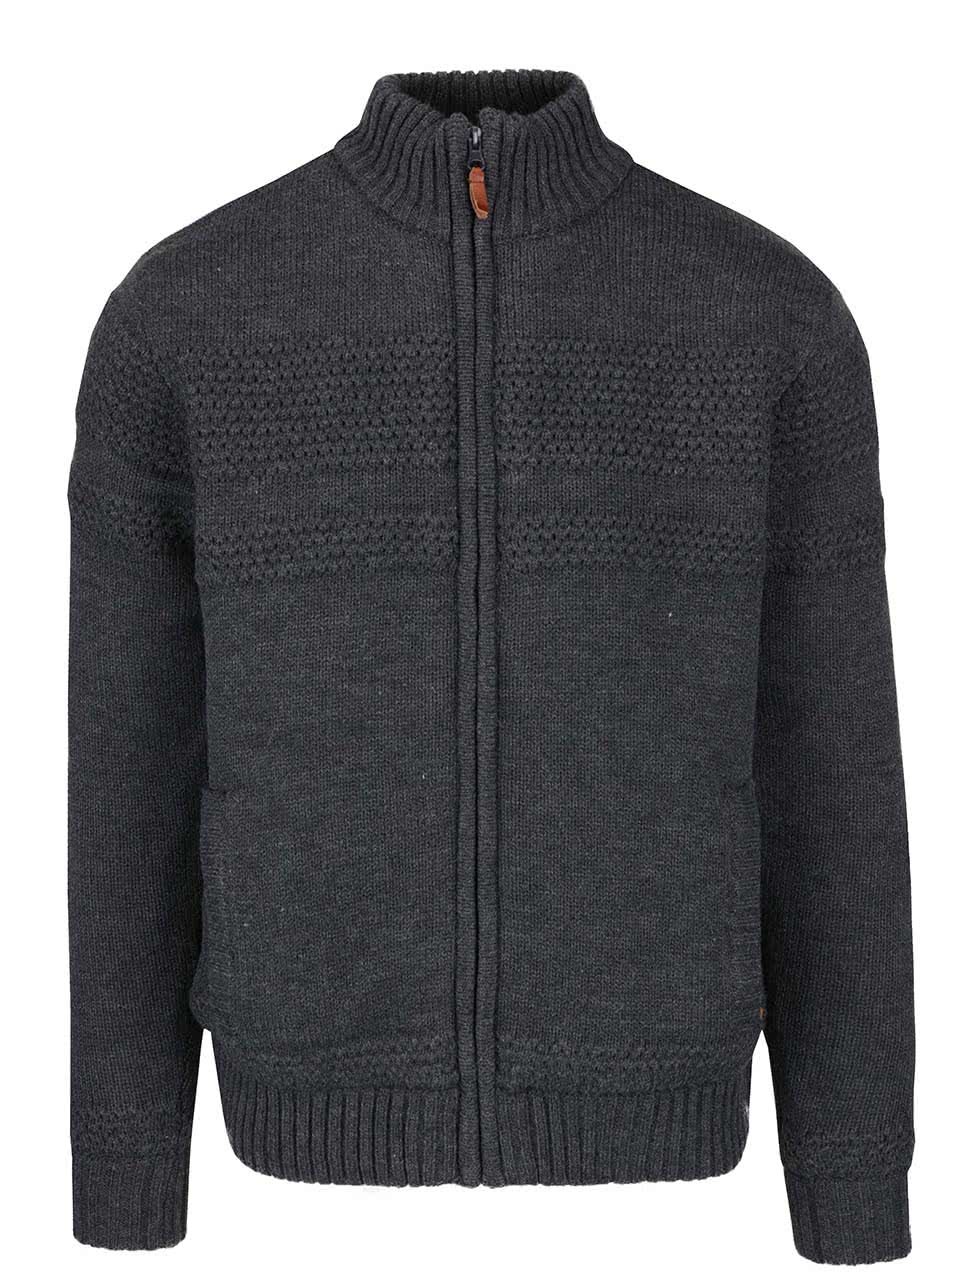 Tmavě šedý svetr na zip s podšívkou z umělého kožíšku Blend